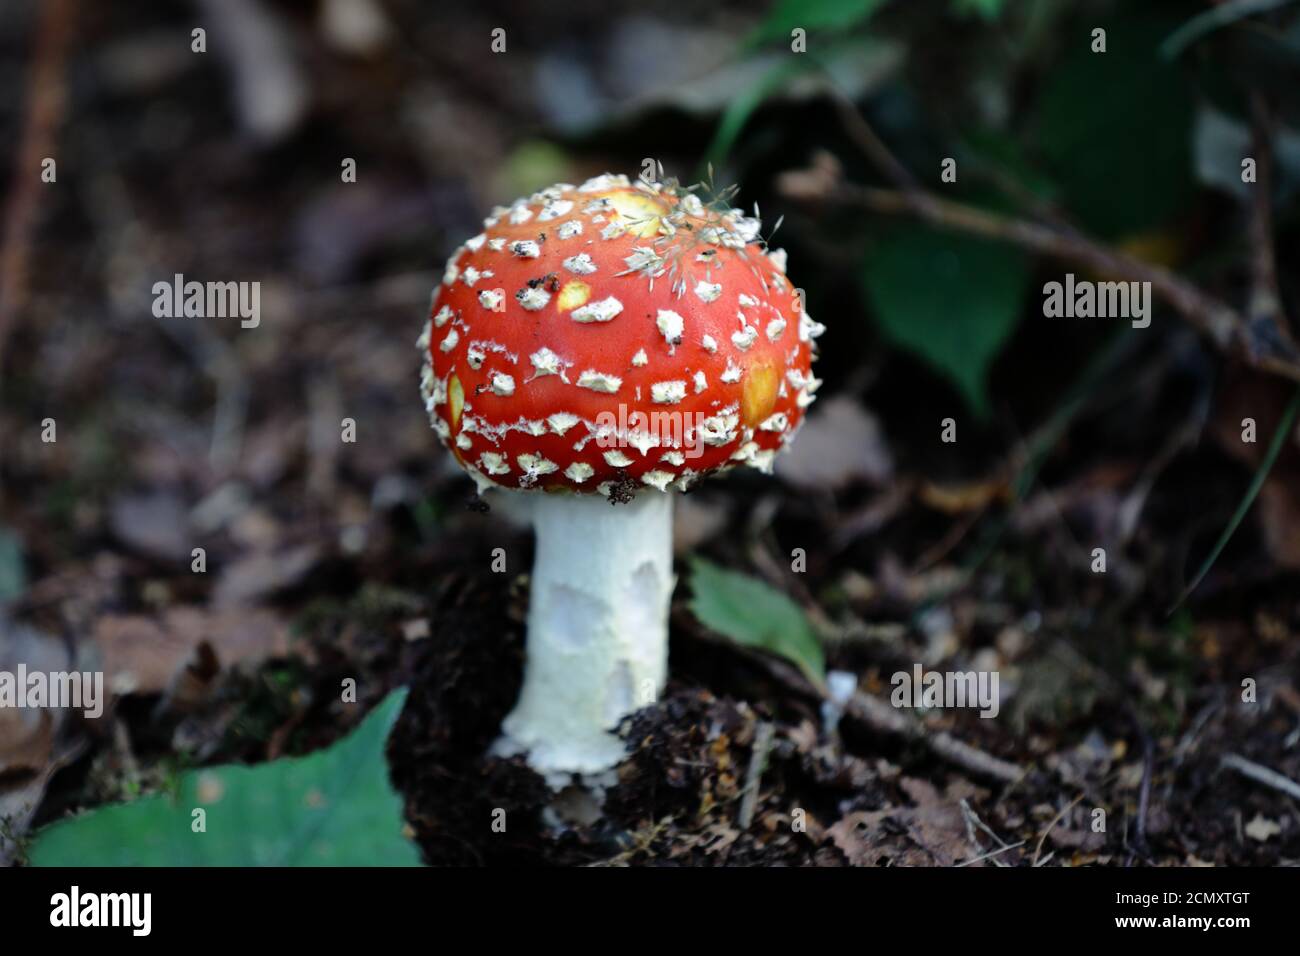 Agarie oder Amanita fliegen (Amanita muscaria) Der rot-weiß gefleckte Pilz ist wohl der ikonischste Toadstool Art Stockfoto